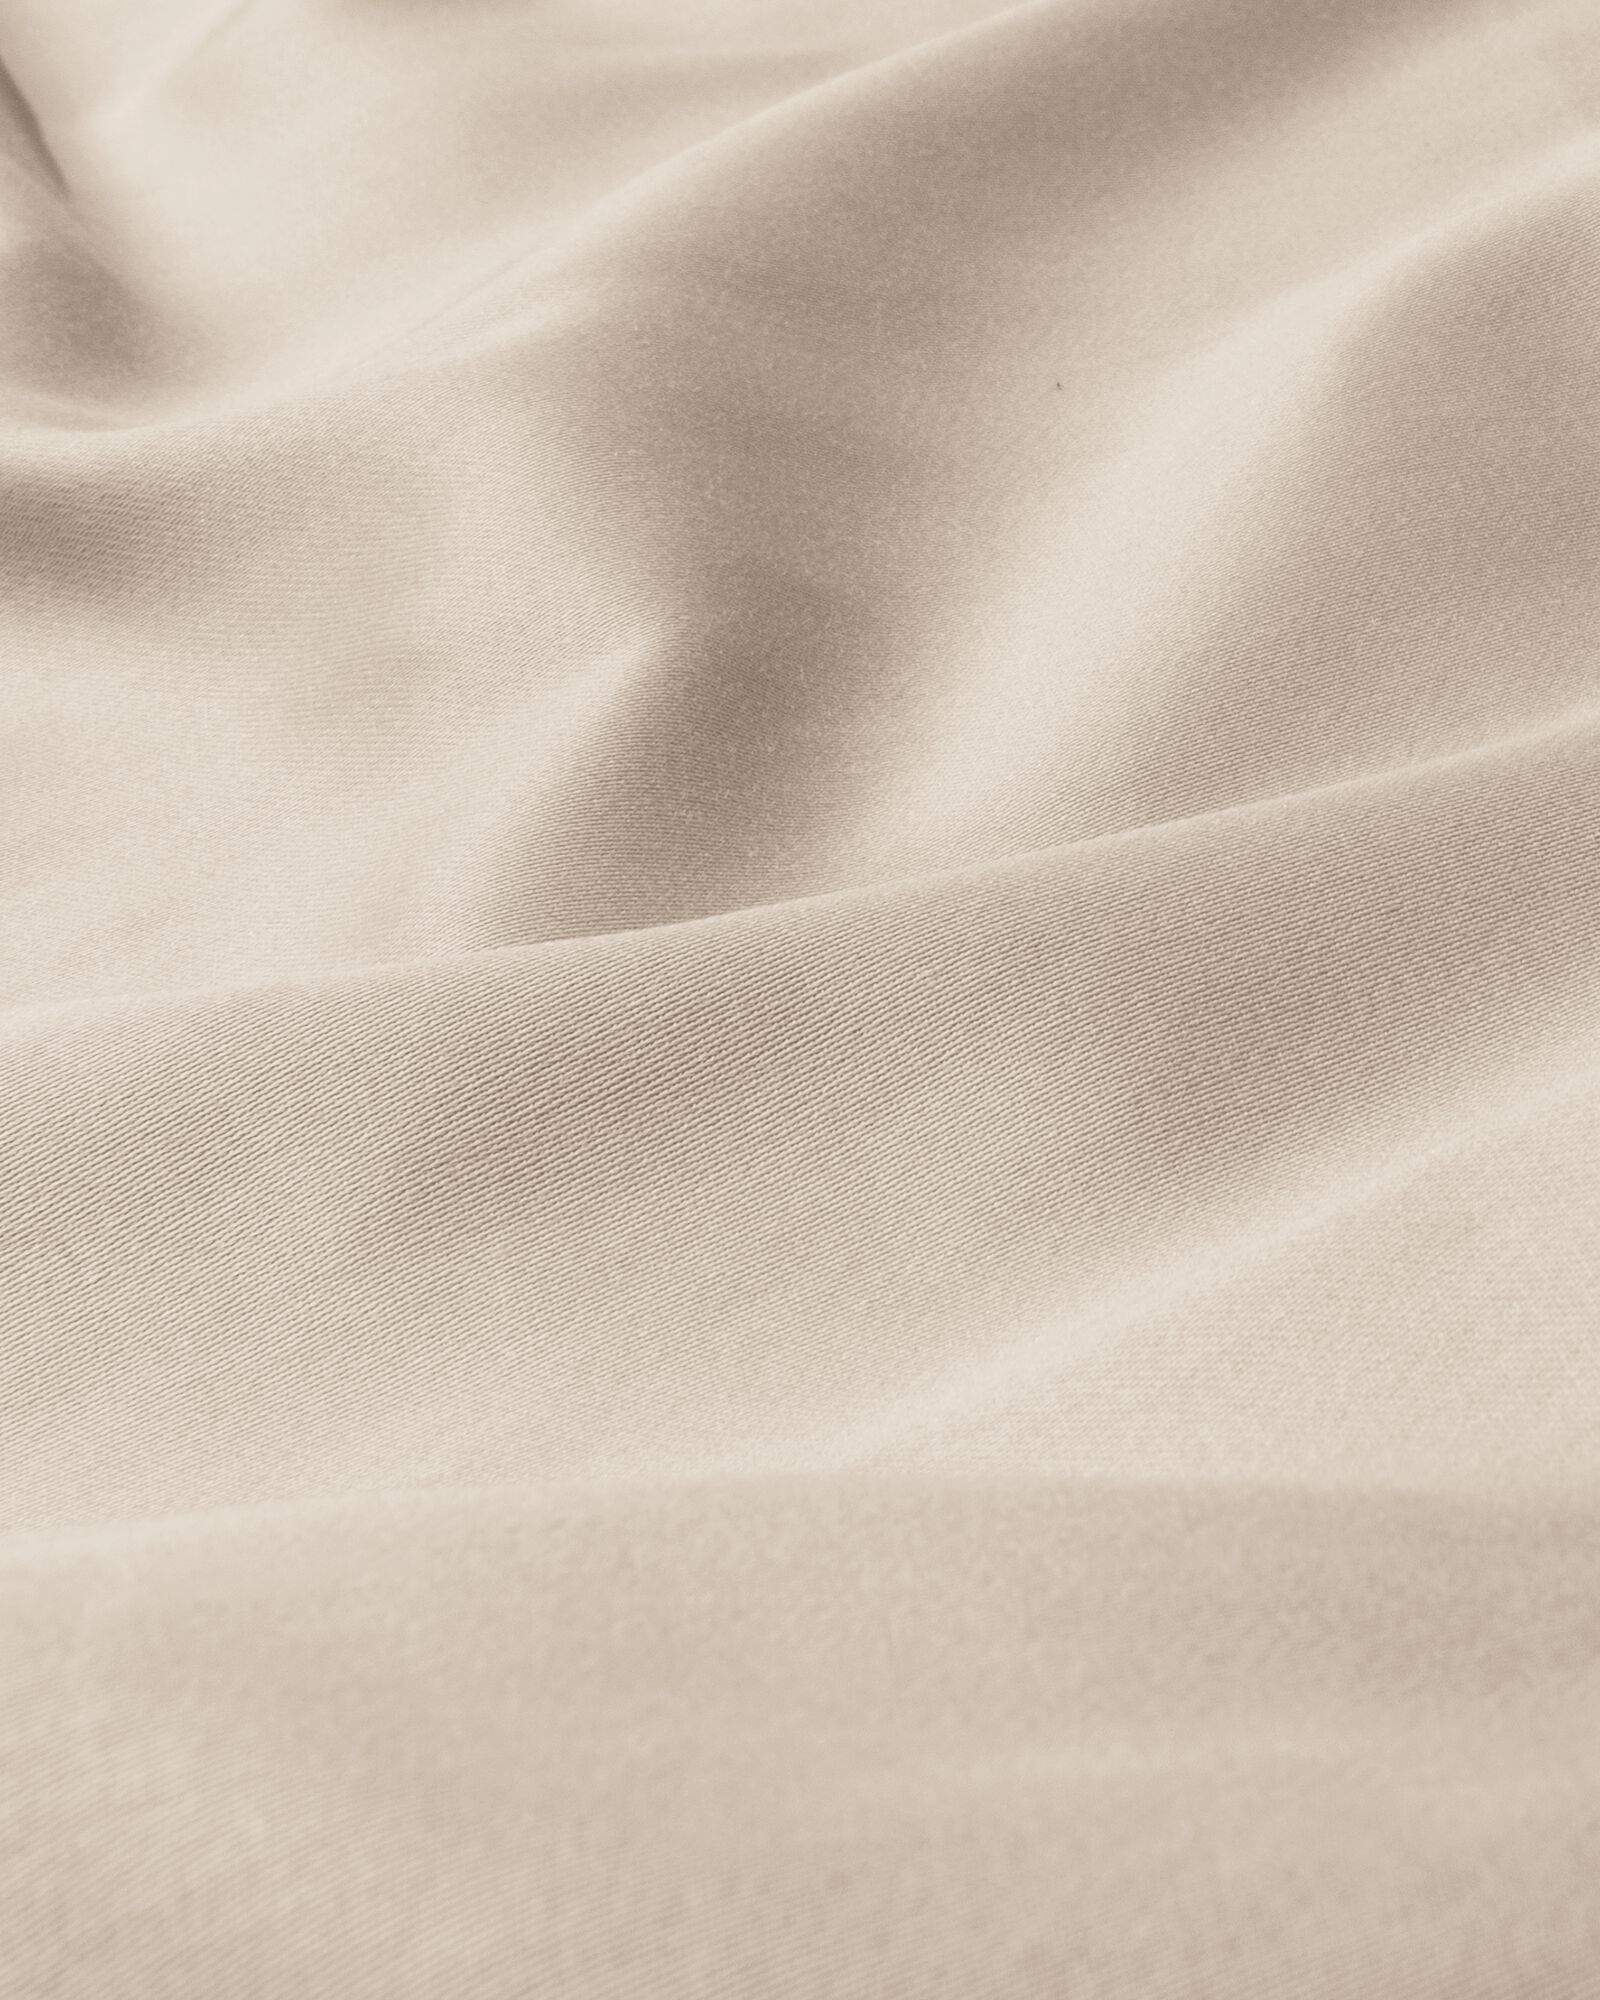 Spannbettlaken, Satin, 160 x 200 cm, sandfarben - 5190103 - HEMA